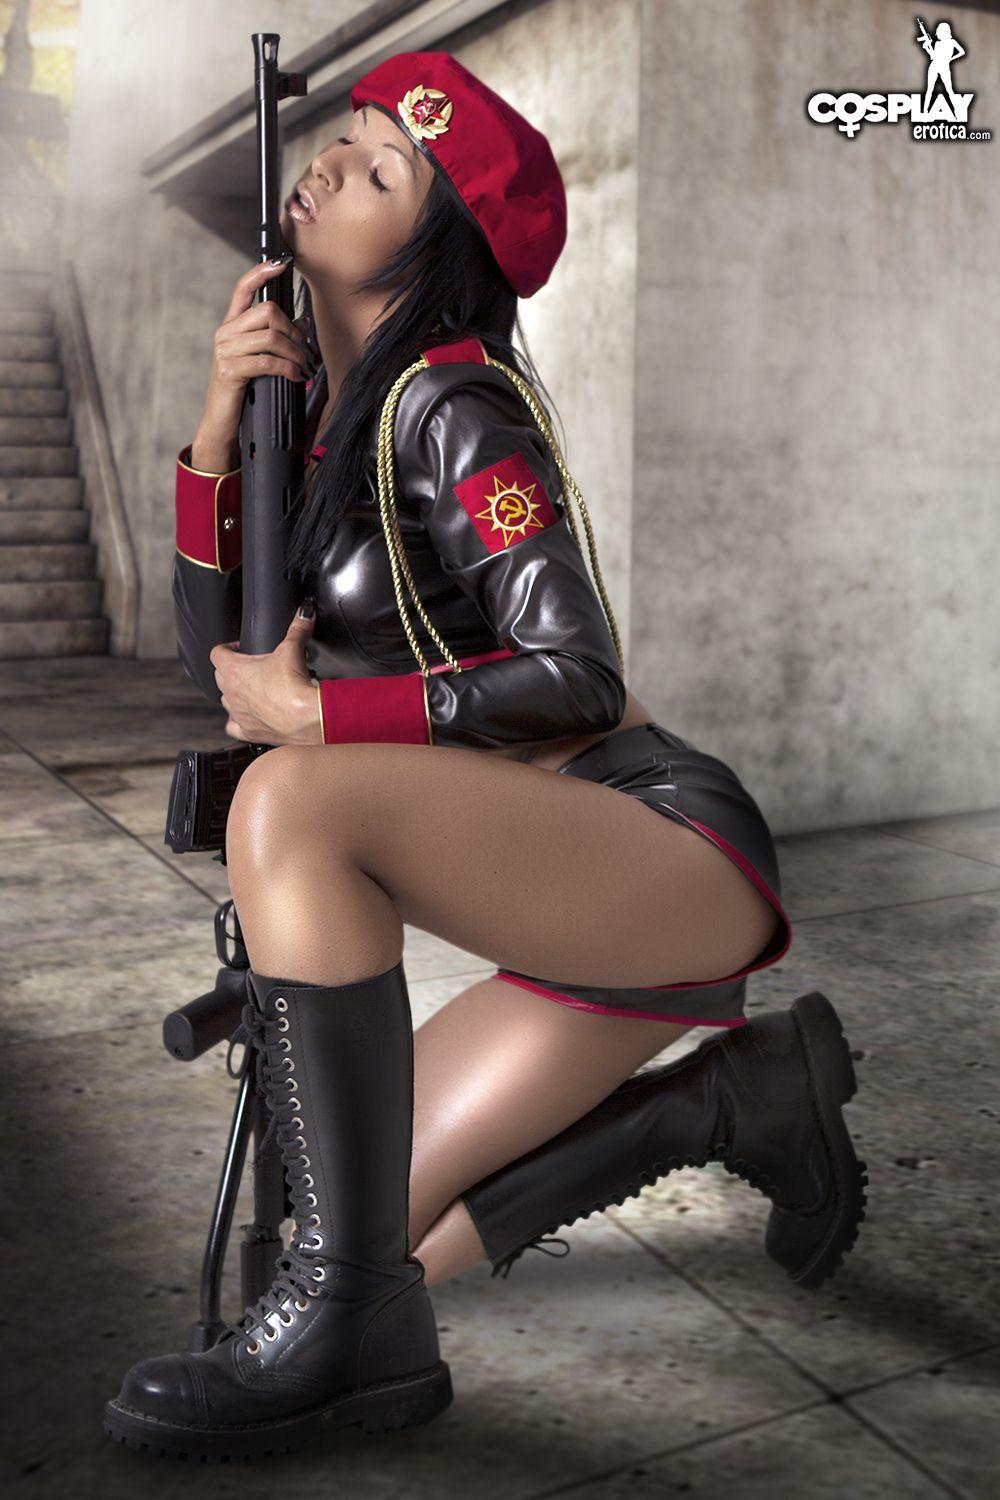 Fotos de la cosplayer mea lee vestida de soldado de red alert
 #59444432